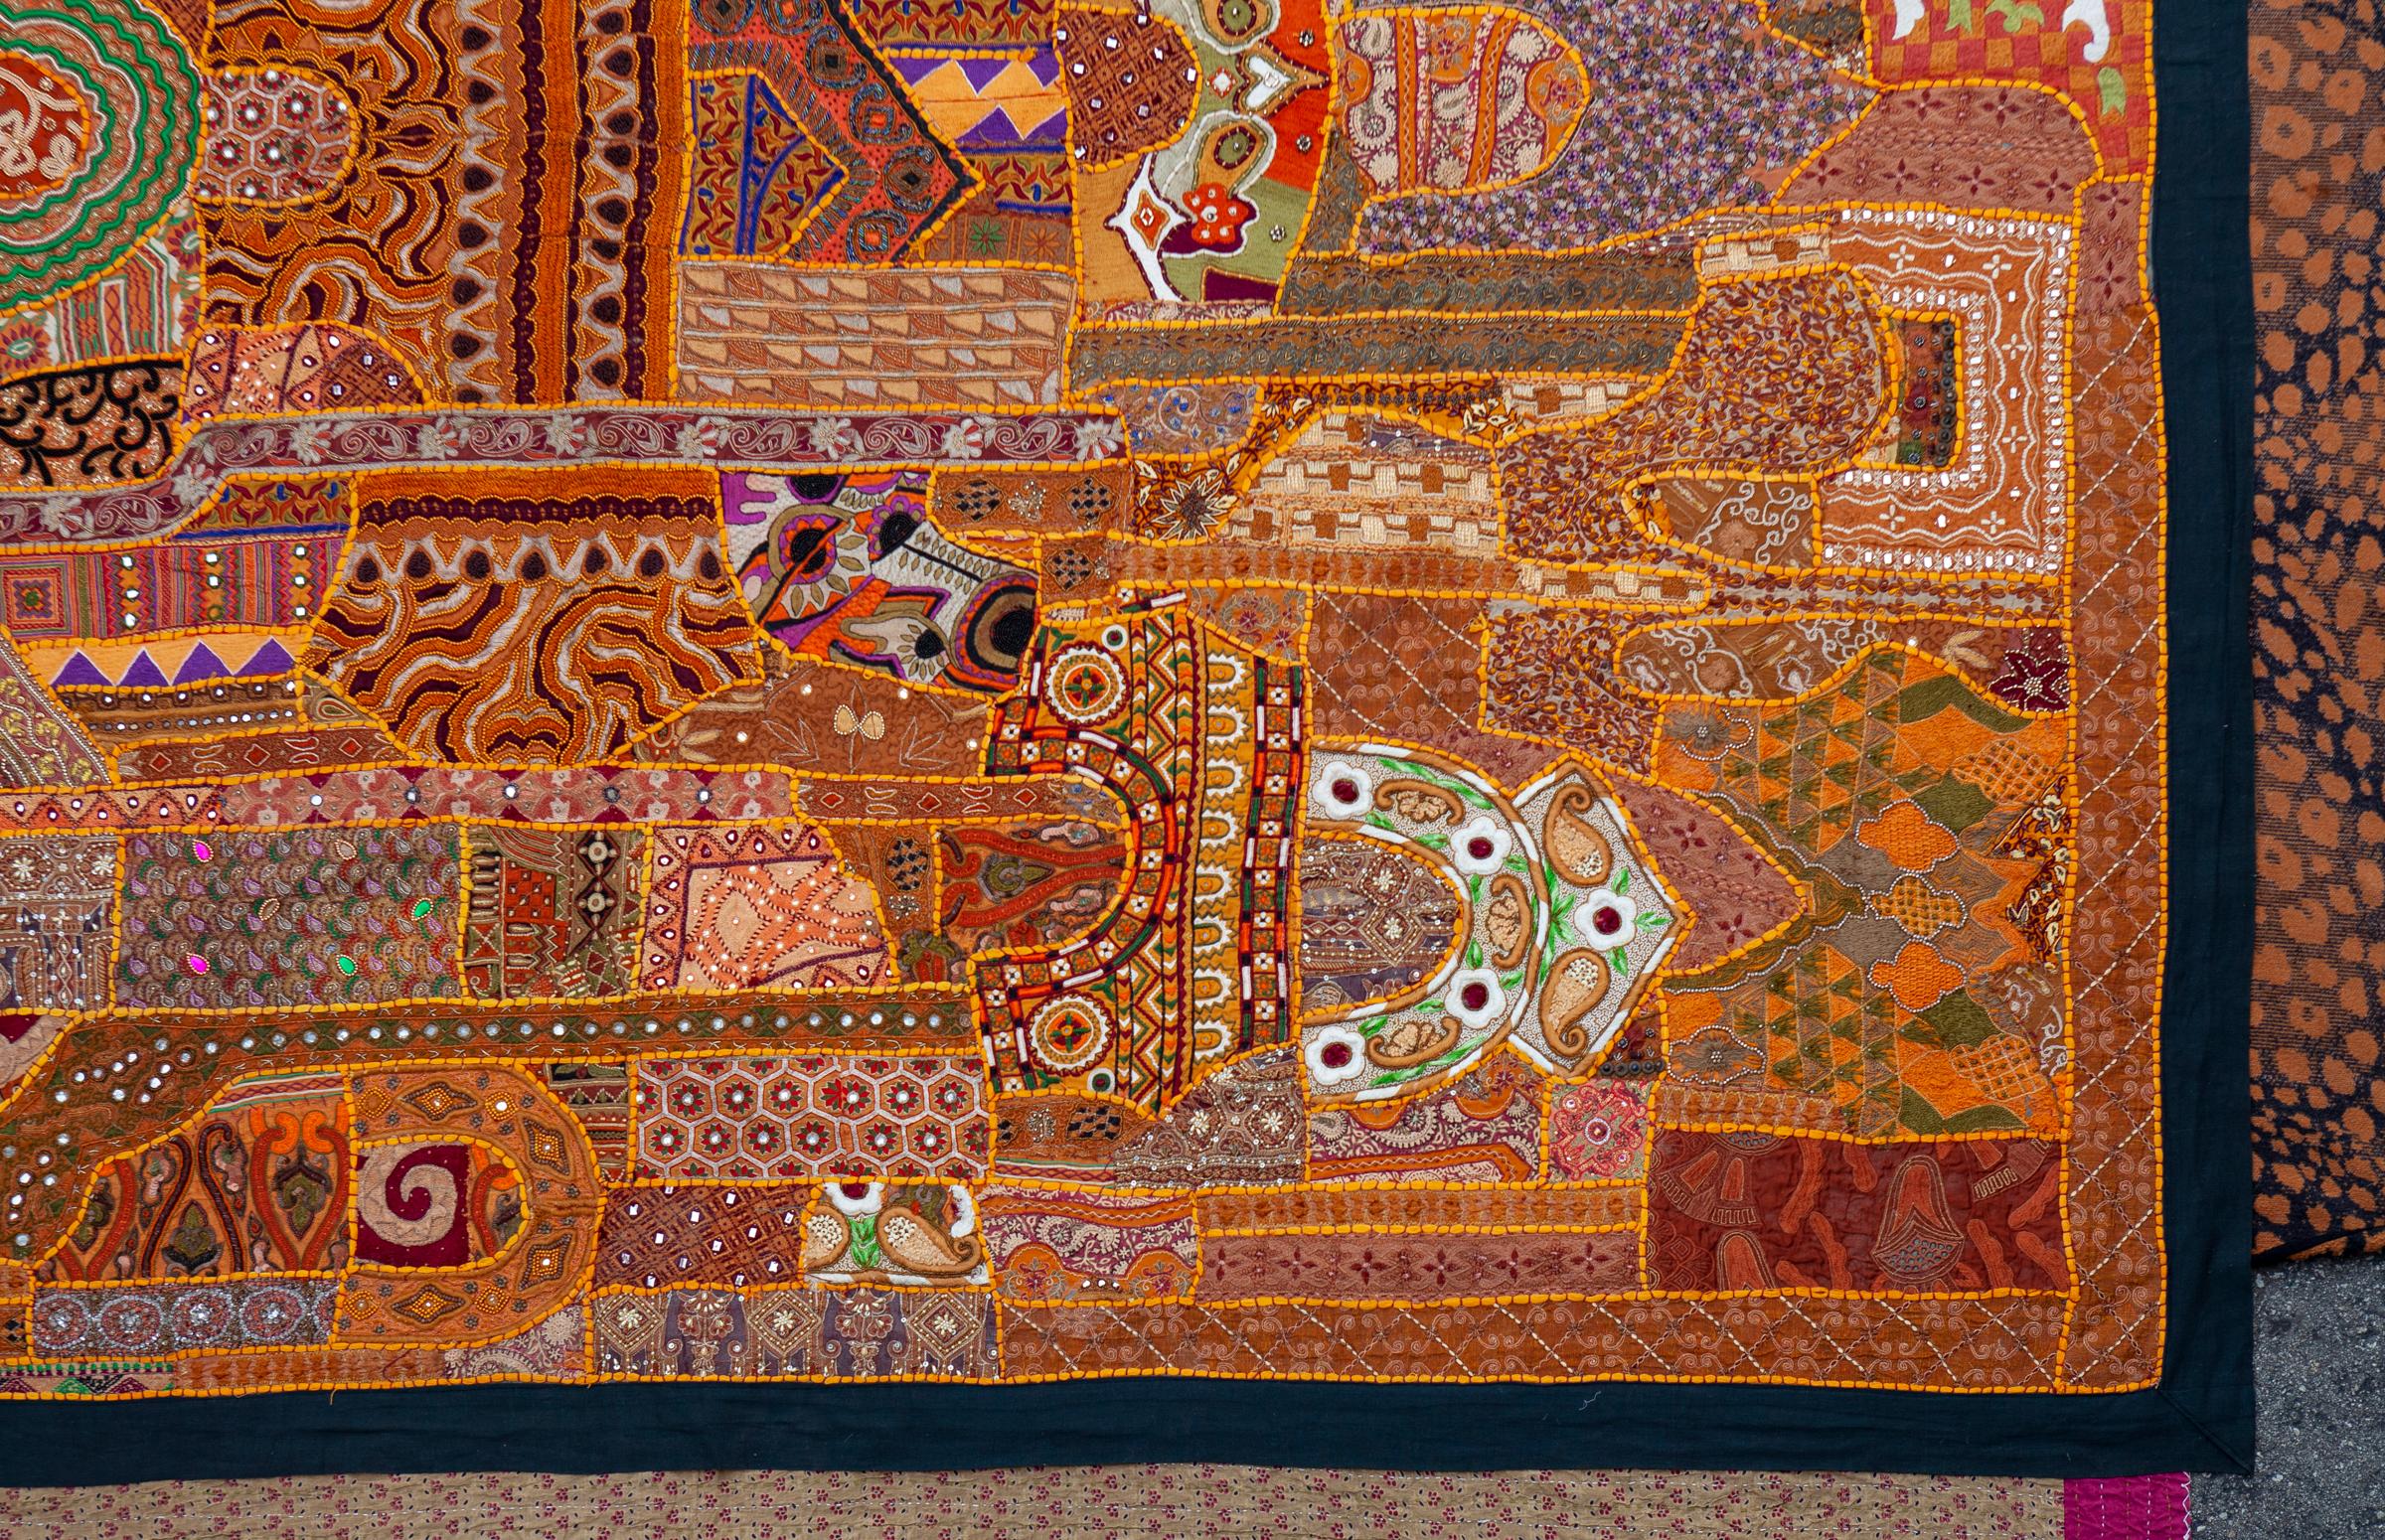 Orangefarbener ostindischer Wandbehang/Gobelin mit Pailletten. Handgefertigt mit antikem Stoff aus Indien. Einige der Stoffe stammen von antiken Saris und enthalten Glasperlen, Metallfäden und Pailletten. Abgeschlossen mit schwarzem Rand.
8'7